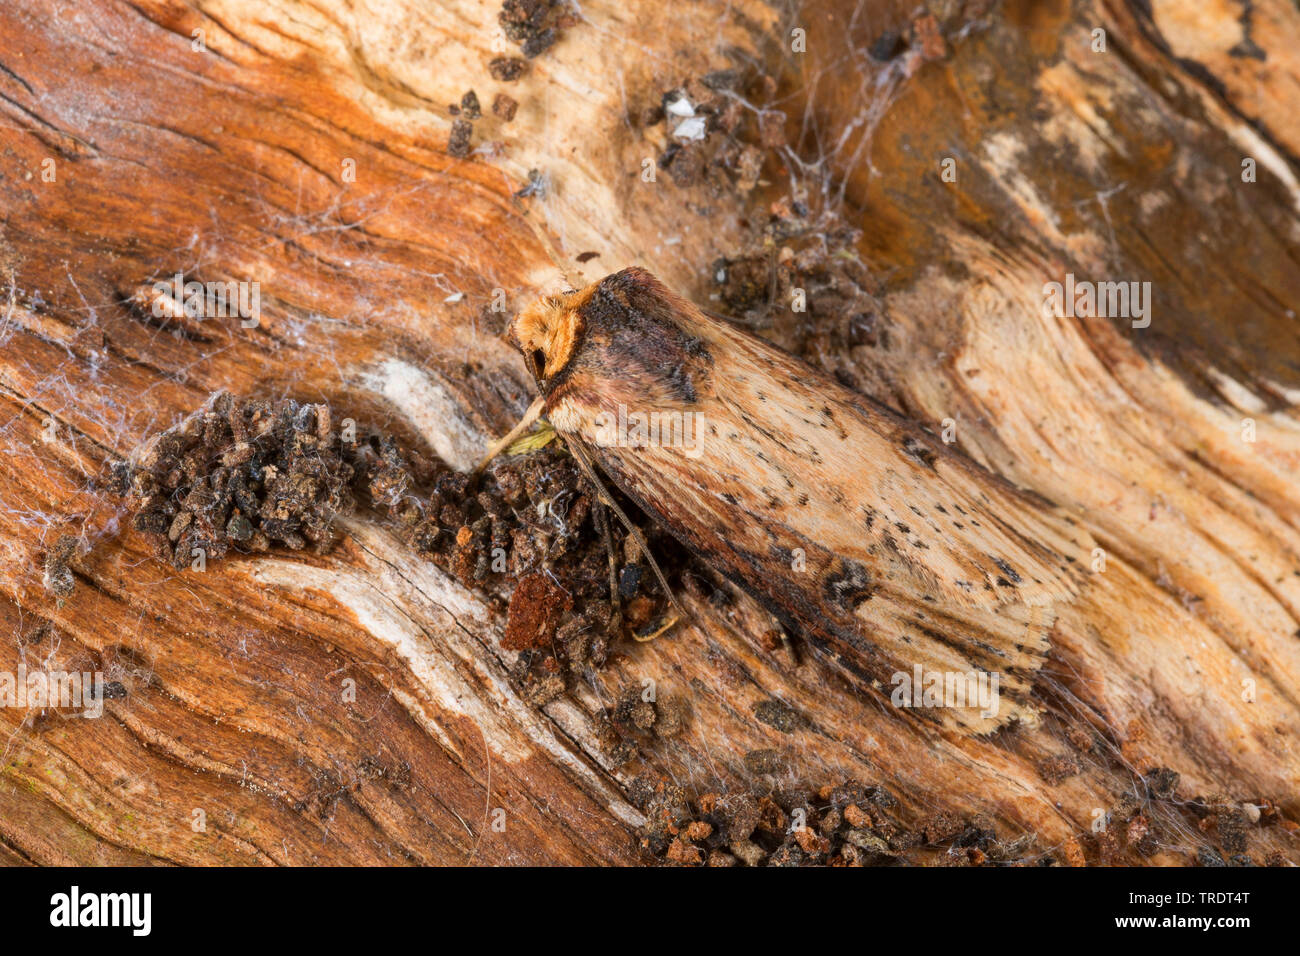 Flame (Axylia putris, Agrotis putris, Rhyacia putris), sitting on wood, Germany Stock Photo